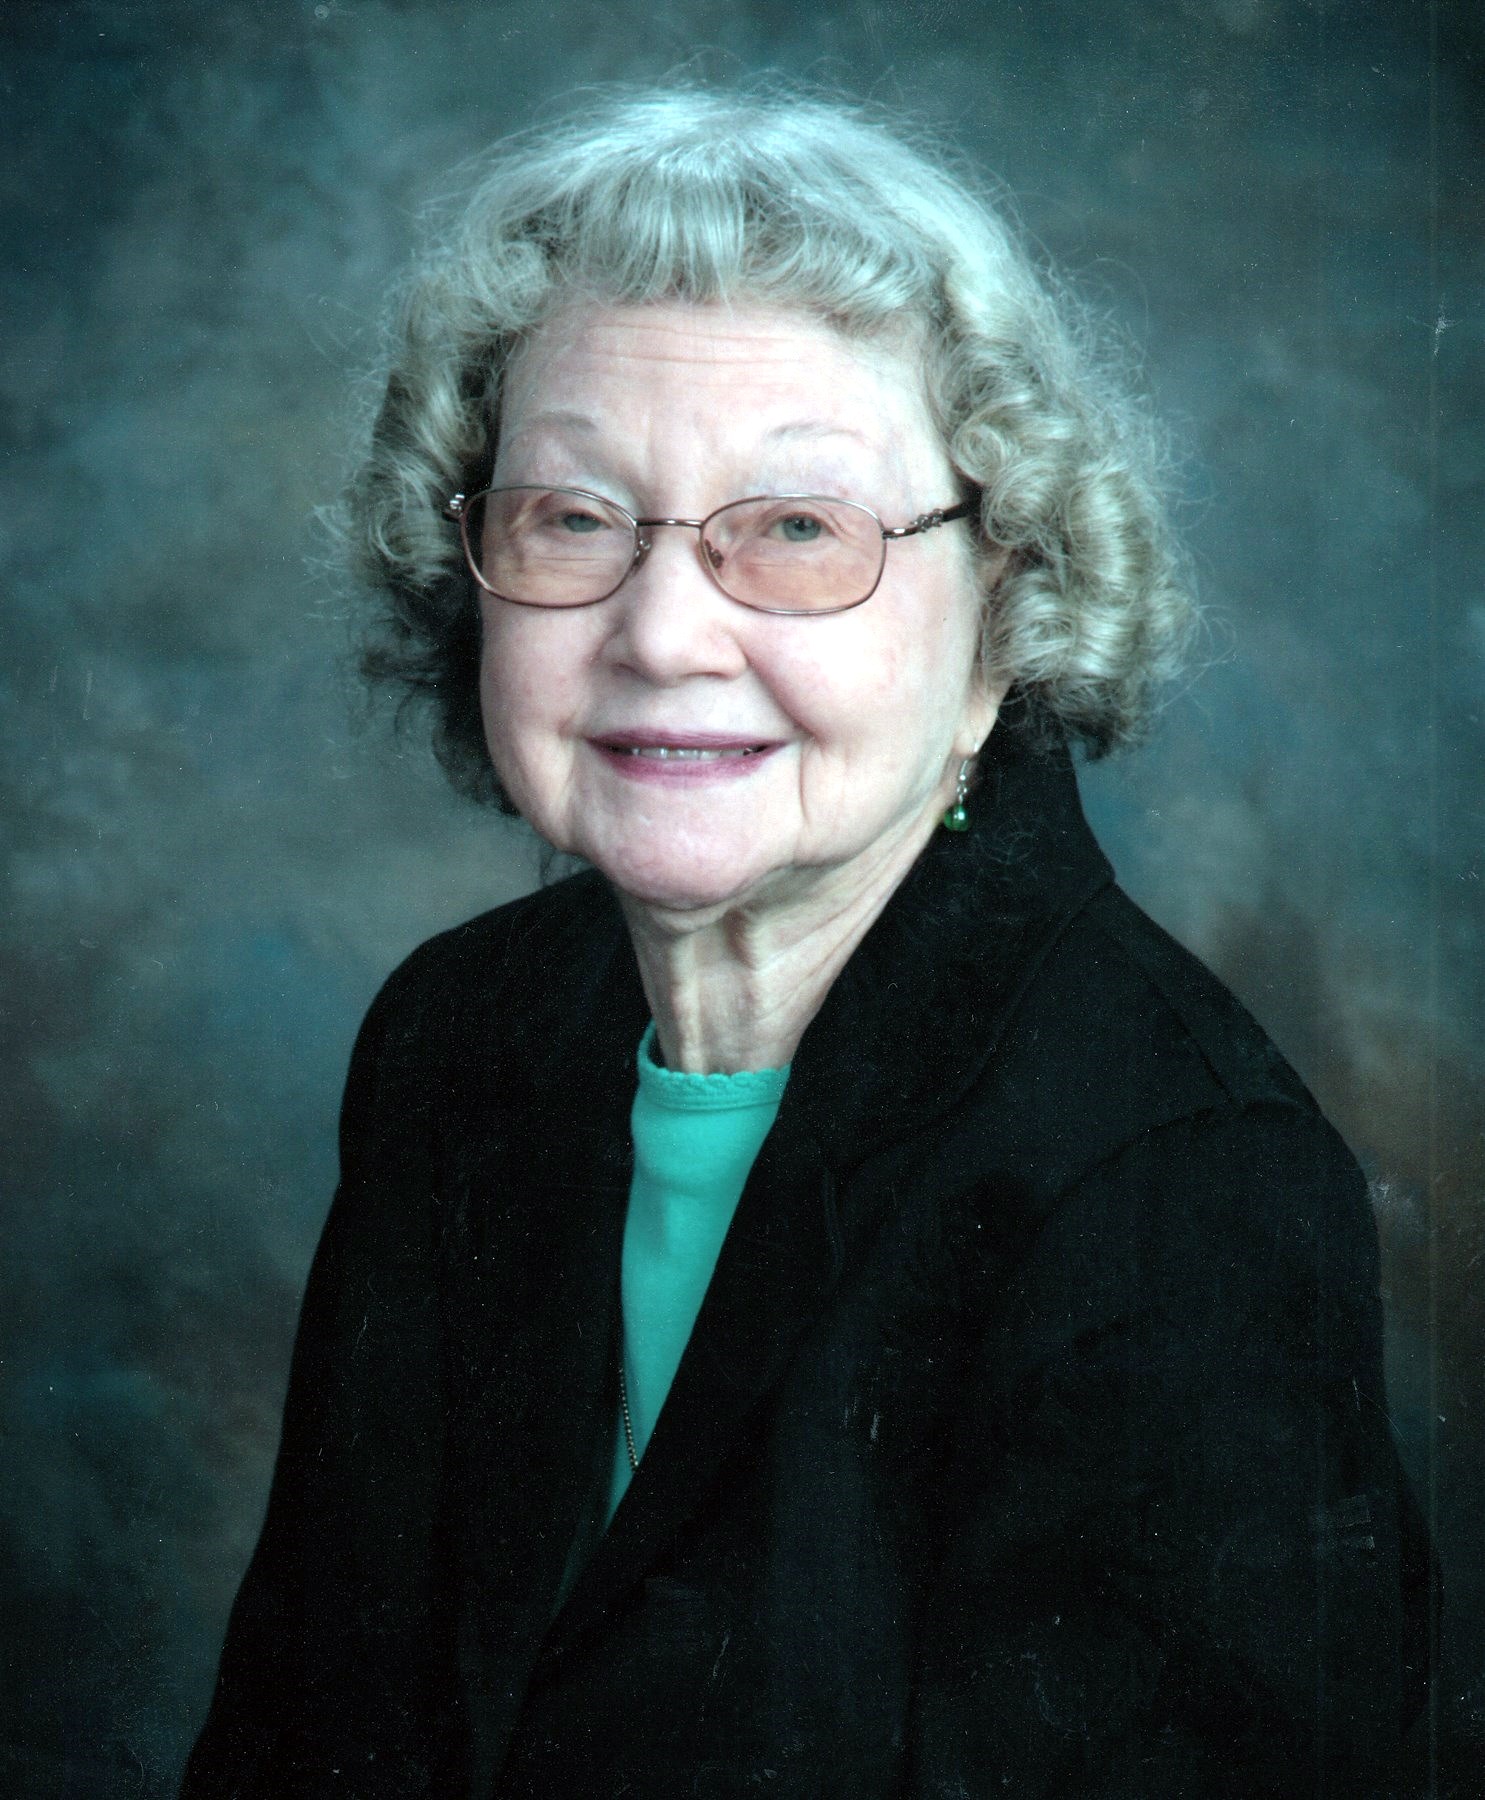 Obituary of Velma Ruth Henry - 08/20/2018 - From the Family